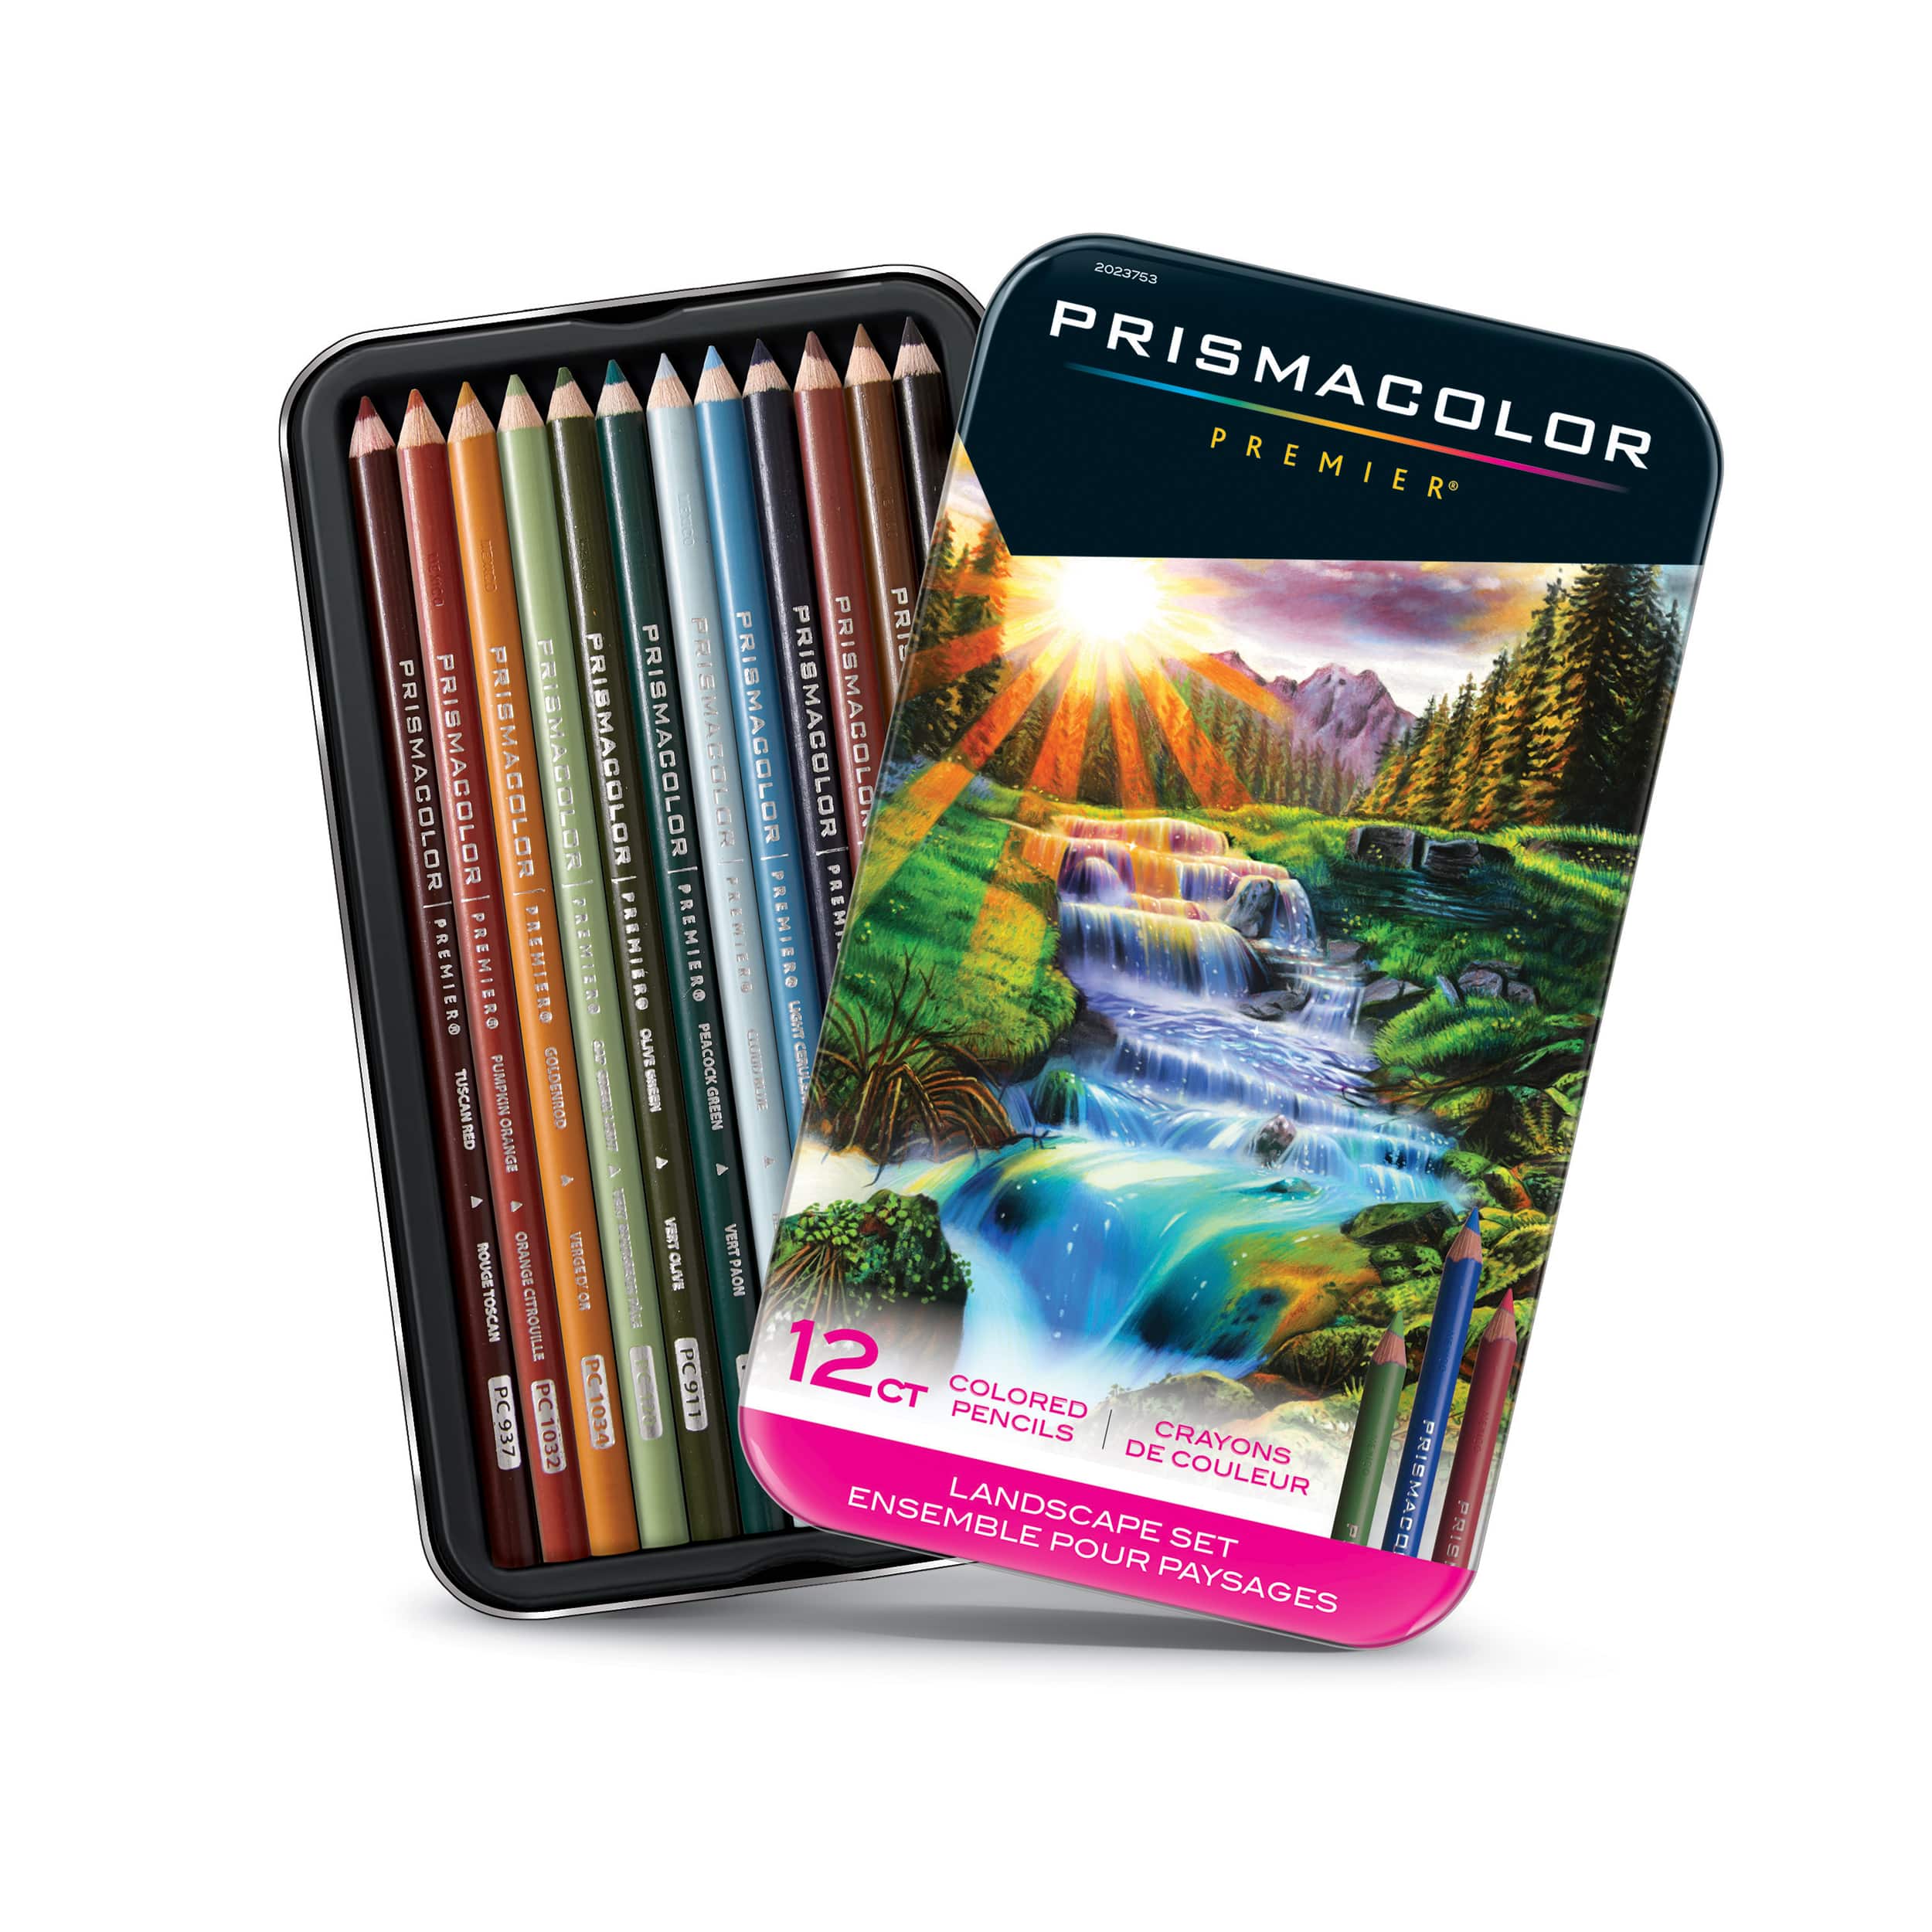 Prismacolor® Premier® Manga Colored Pencil Set